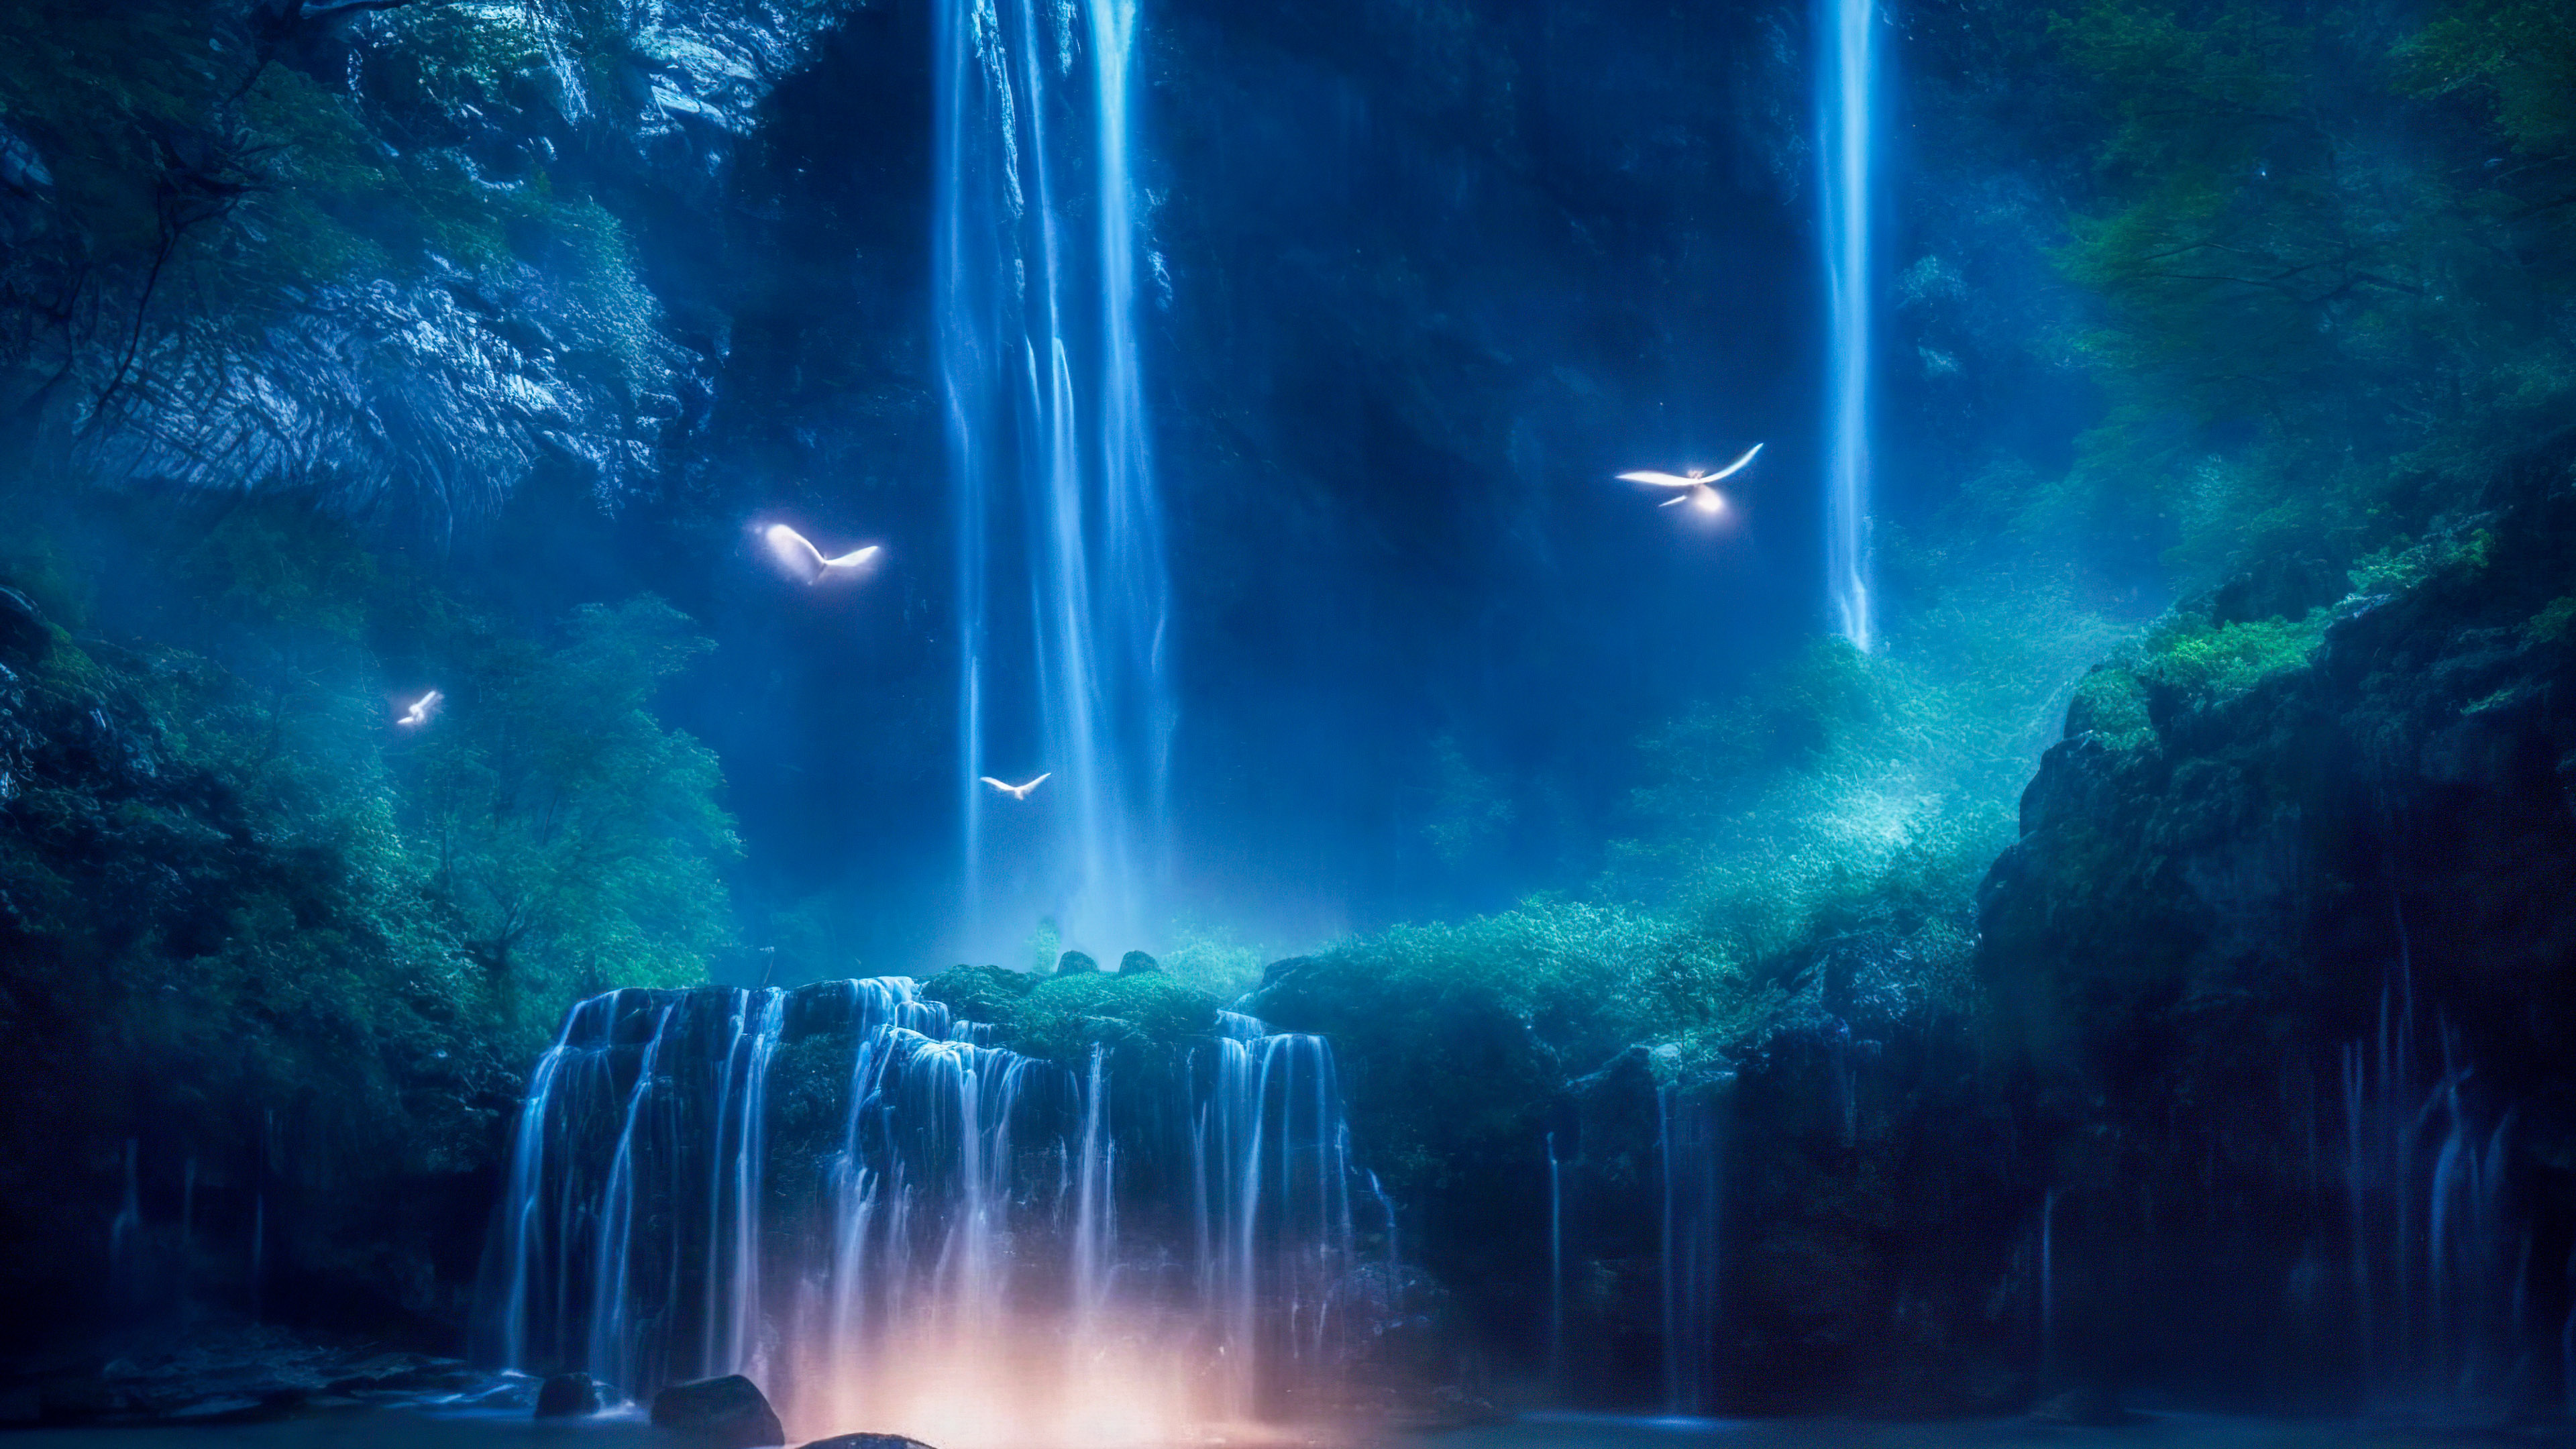 Vivez l'enchantement d'une cascade magique illuminée par le clair de lune, avec des lucioles dansant autour de ses eaux en cascade, à travers notre fond d'écran nature en 4K pour votre PC.